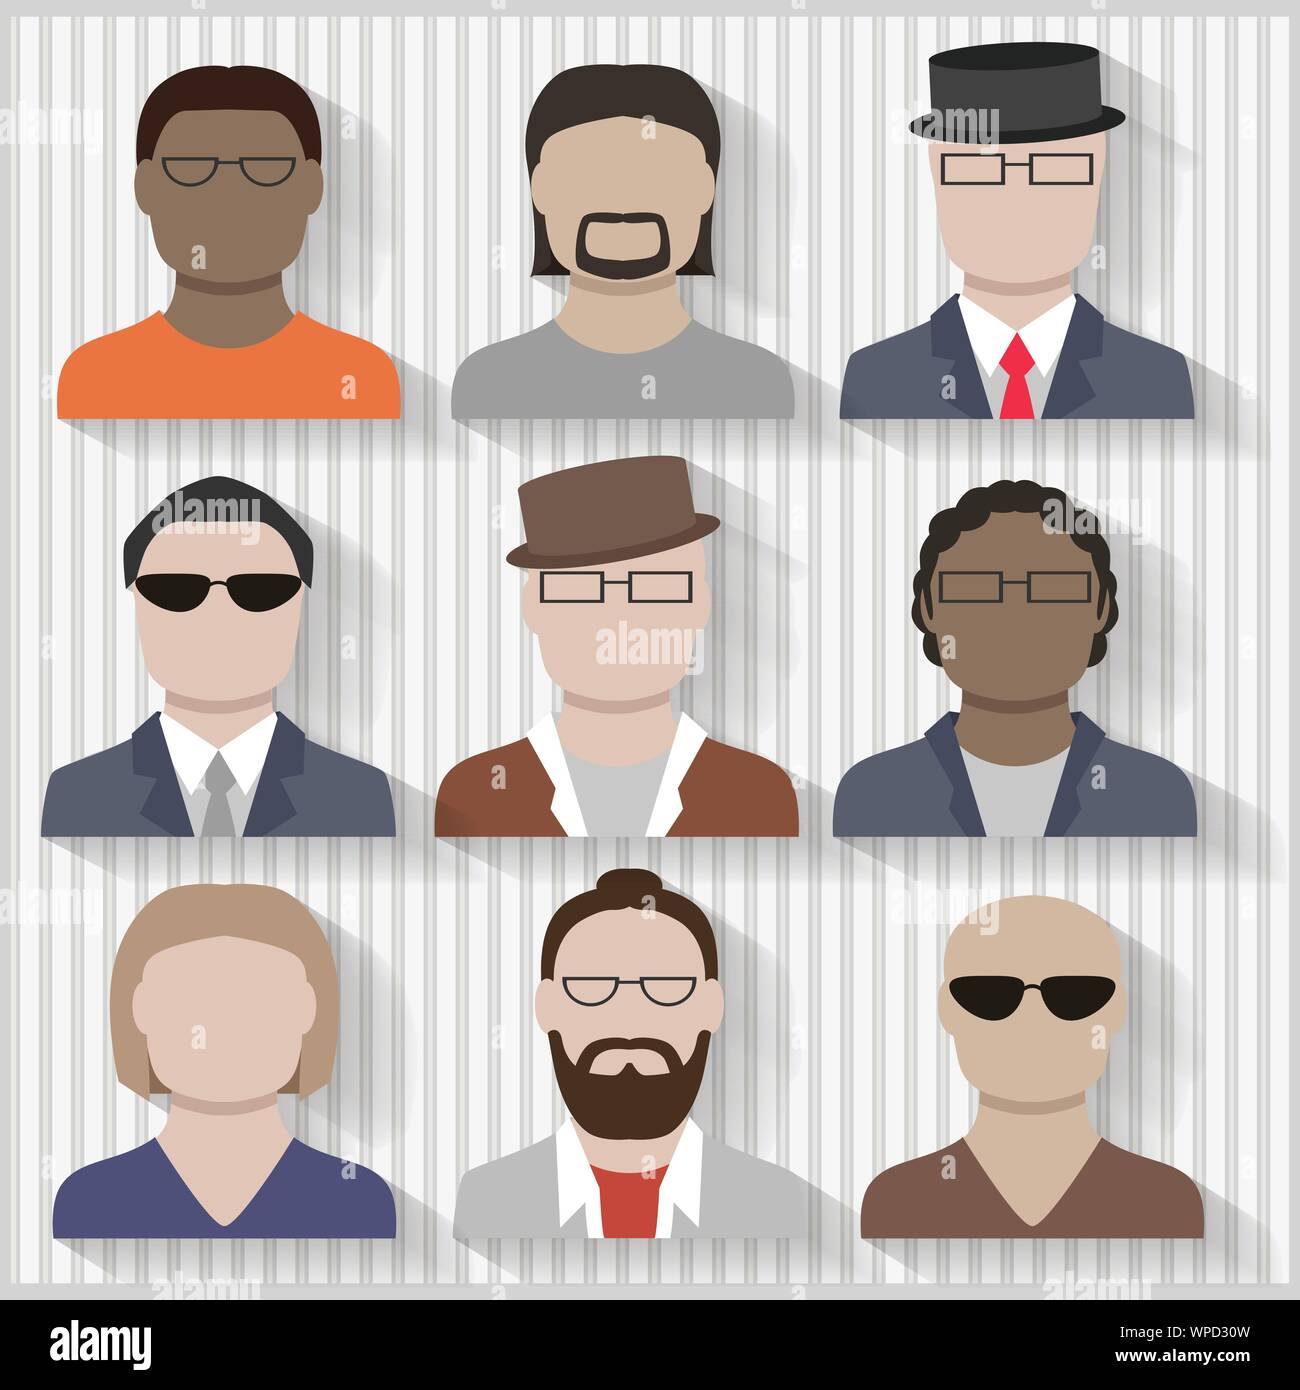 Les hommes d'affaires et culturelles multiples télévision masculins des icônes avec ombres et regroupés en couches de mélanges contient Illustration de Vecteur